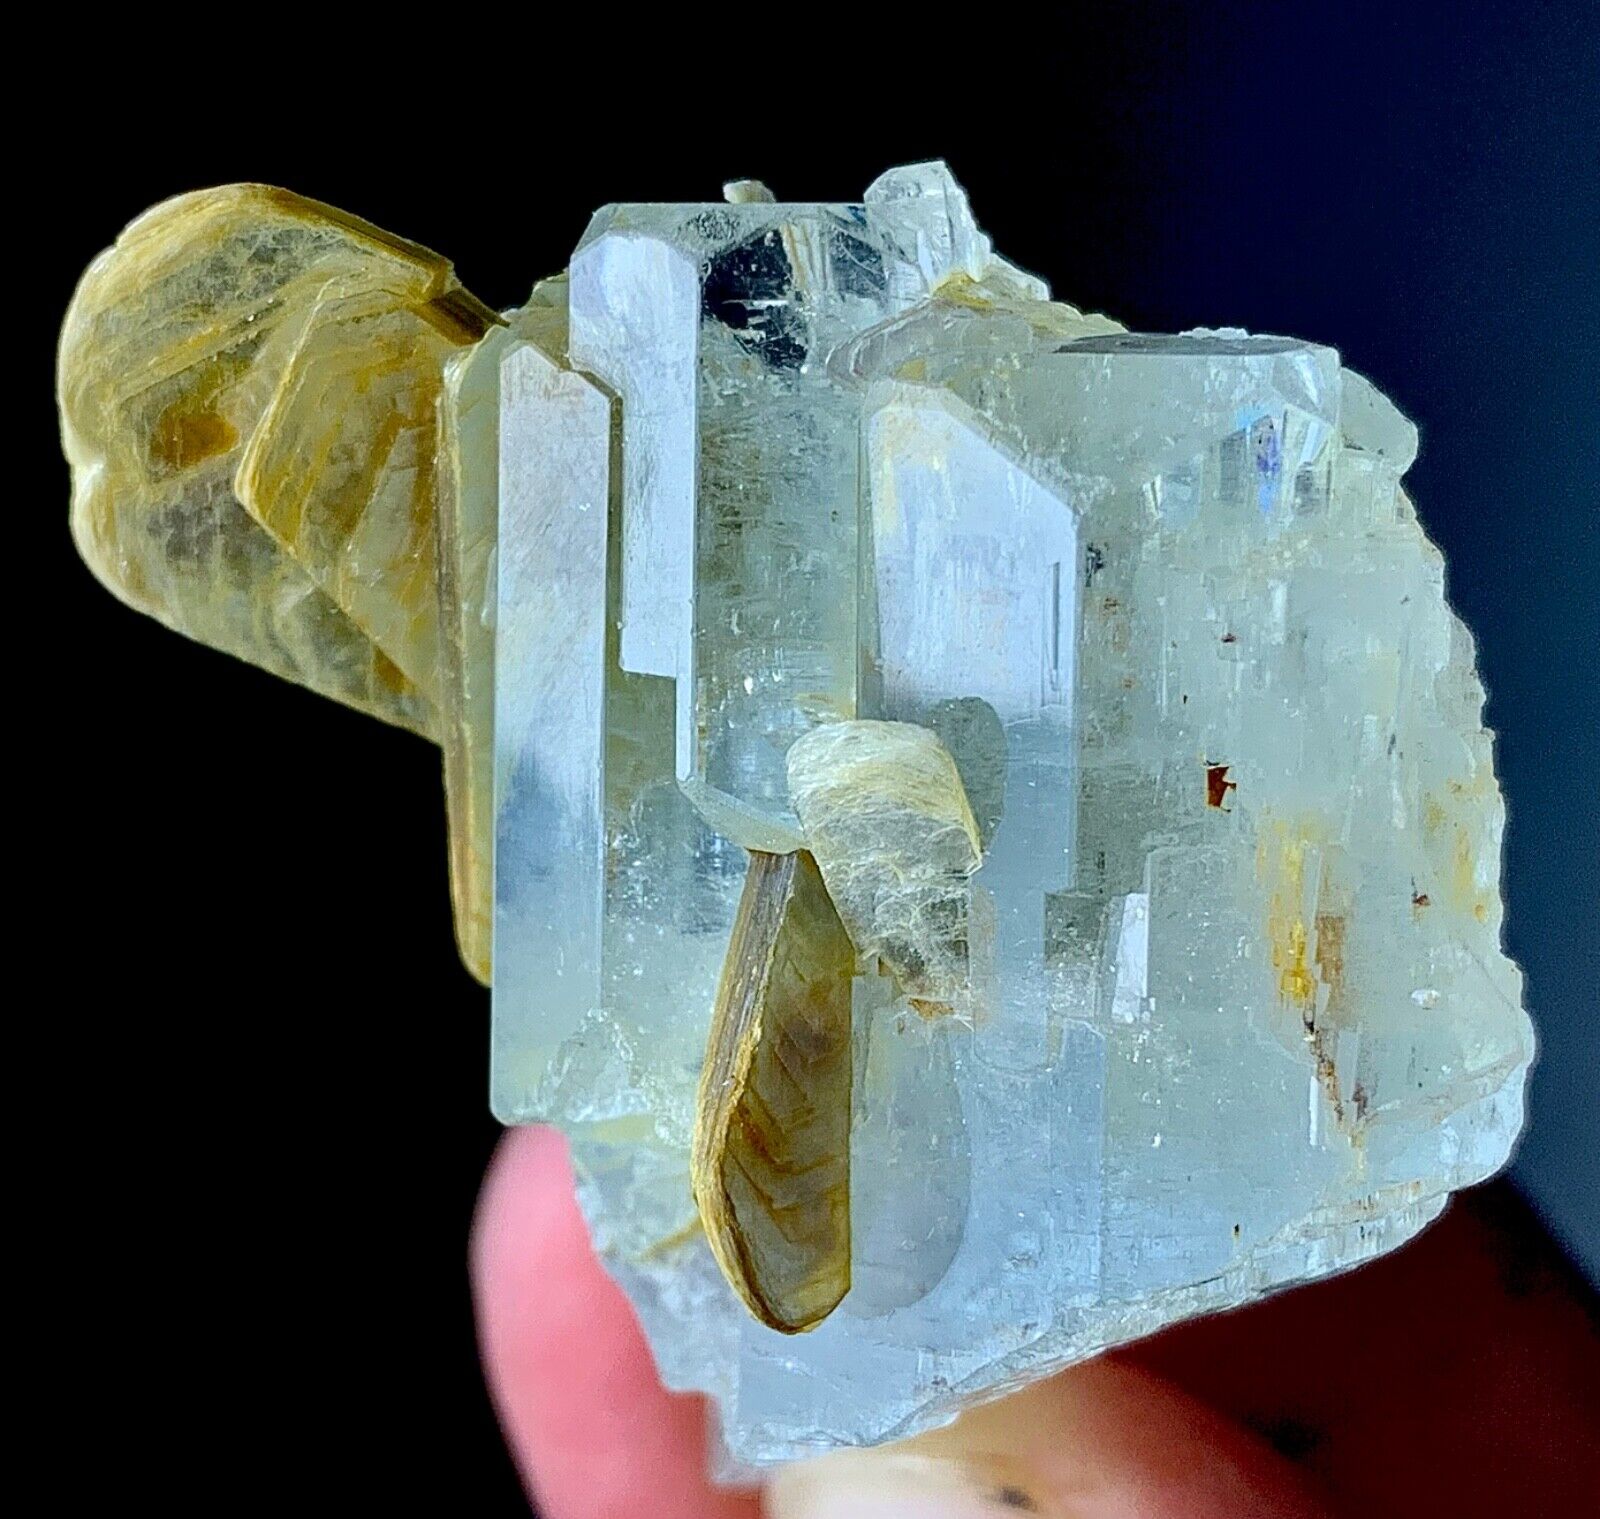 130 Carat Aquamarine Crystal Specimen From Nagar Valley Pakistan